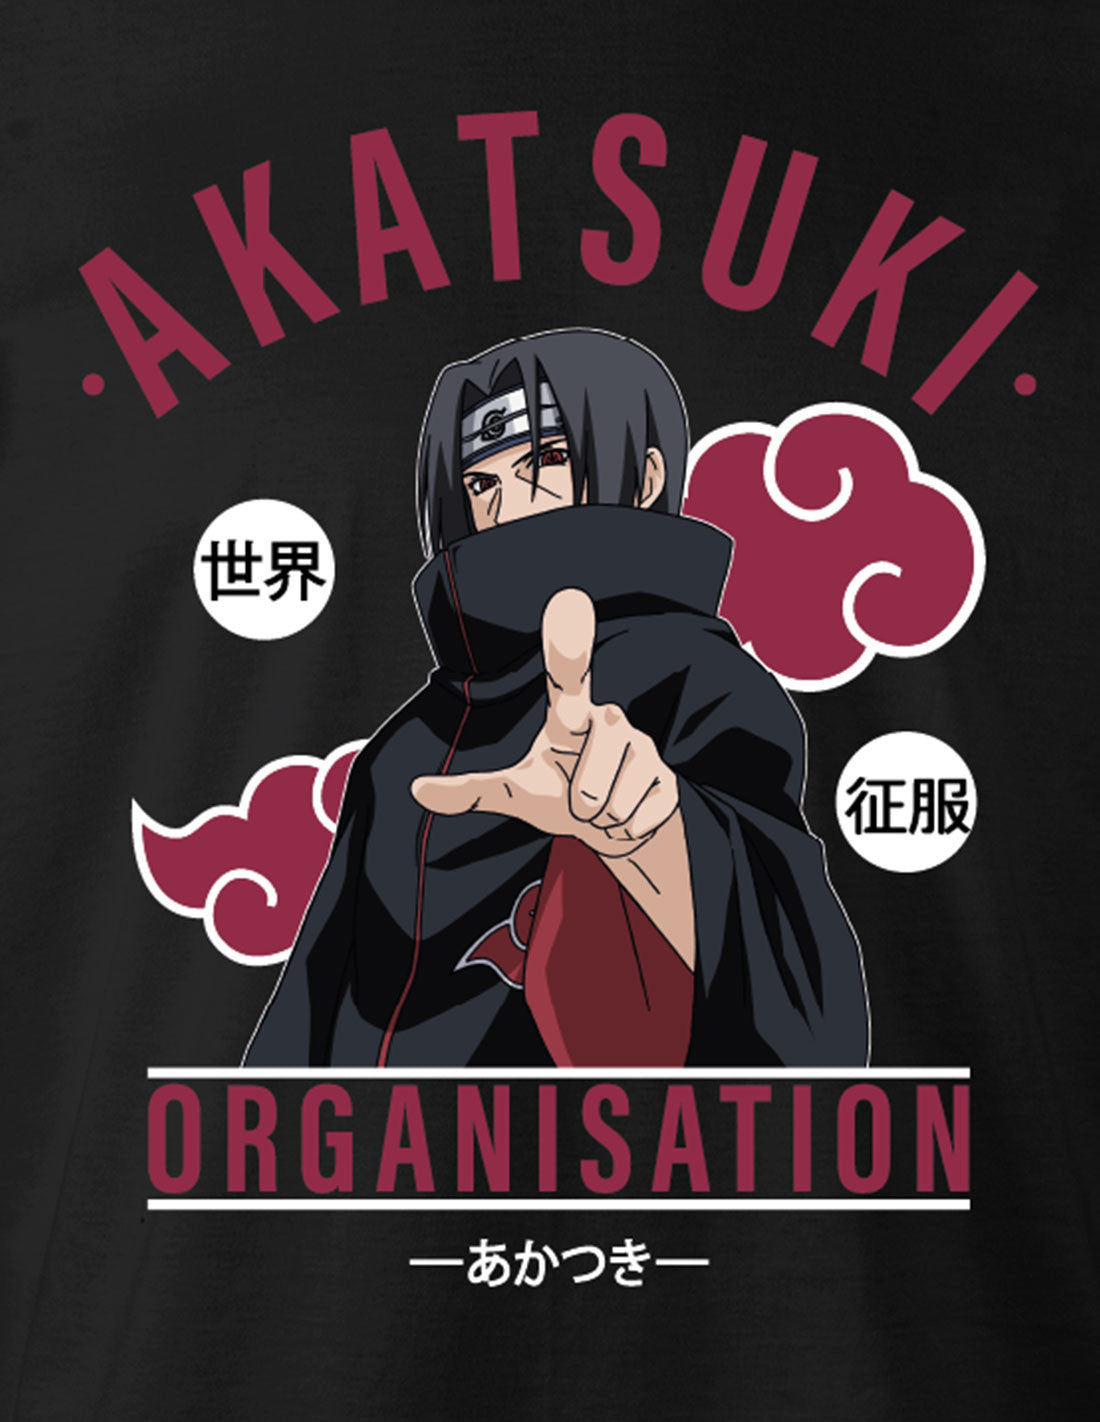 Naruto T-shirt - Akatsuki Organization